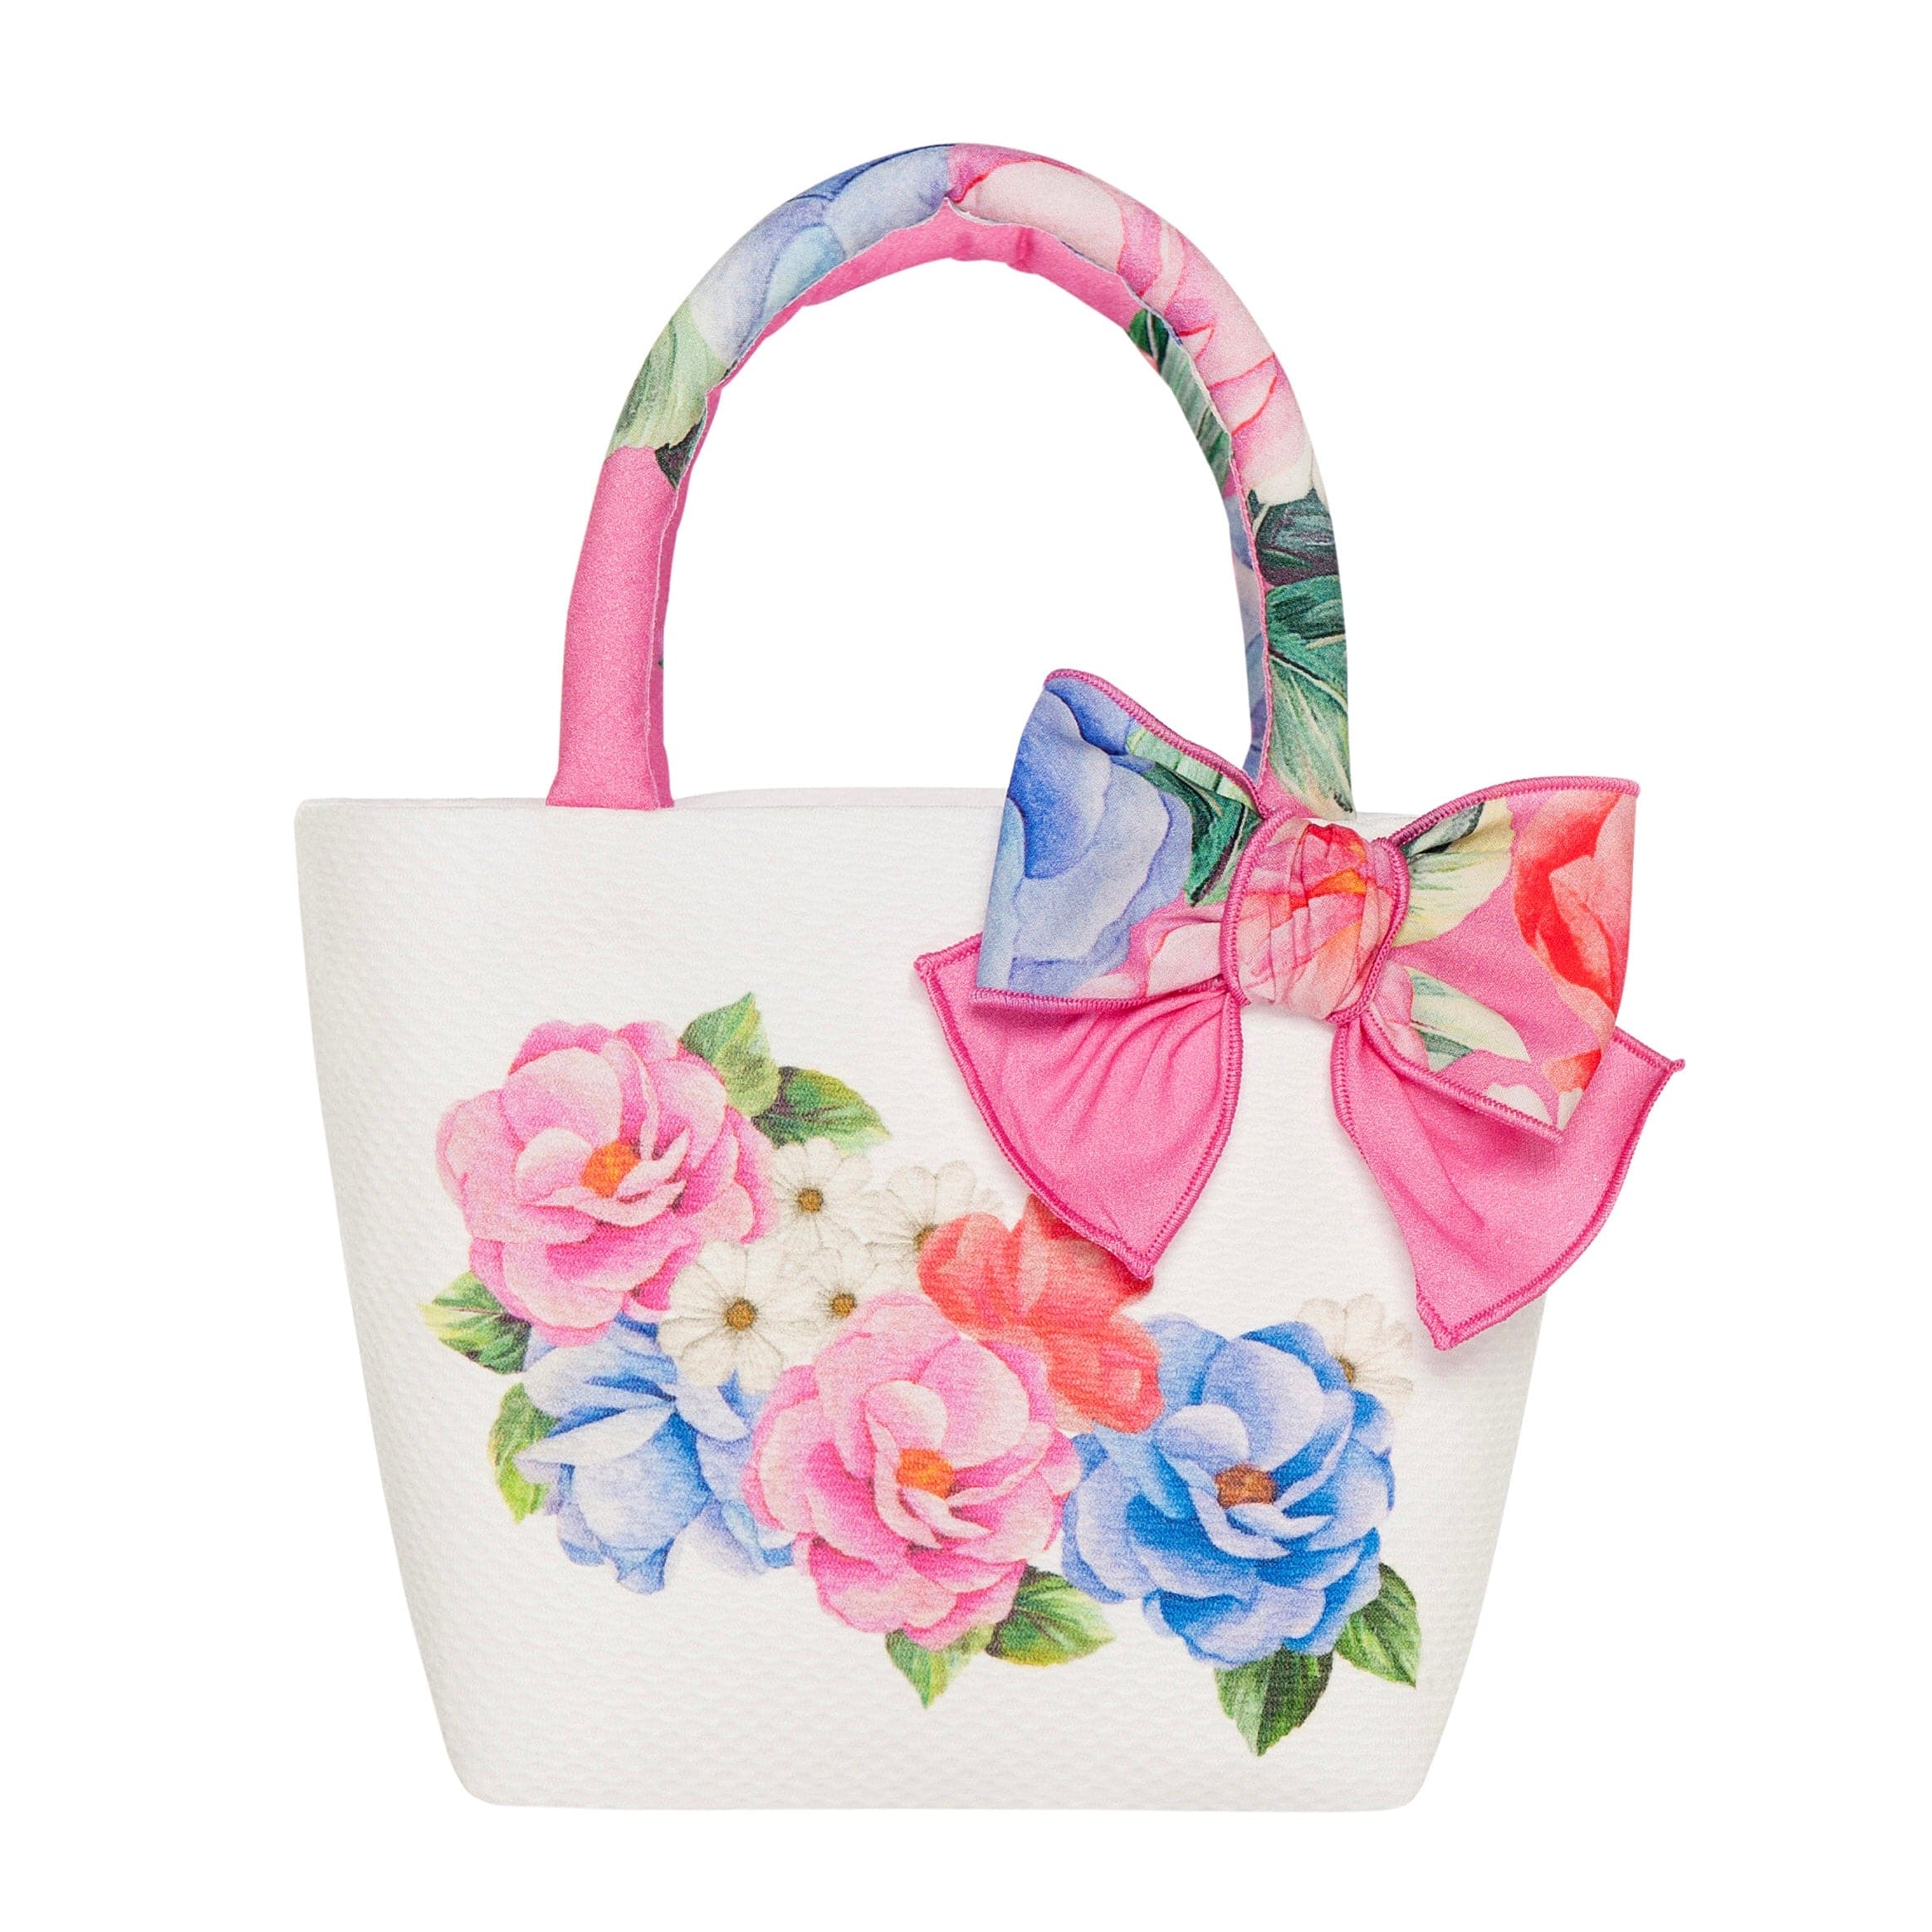 BALLOON CHIC - Floral Handbag - Pink